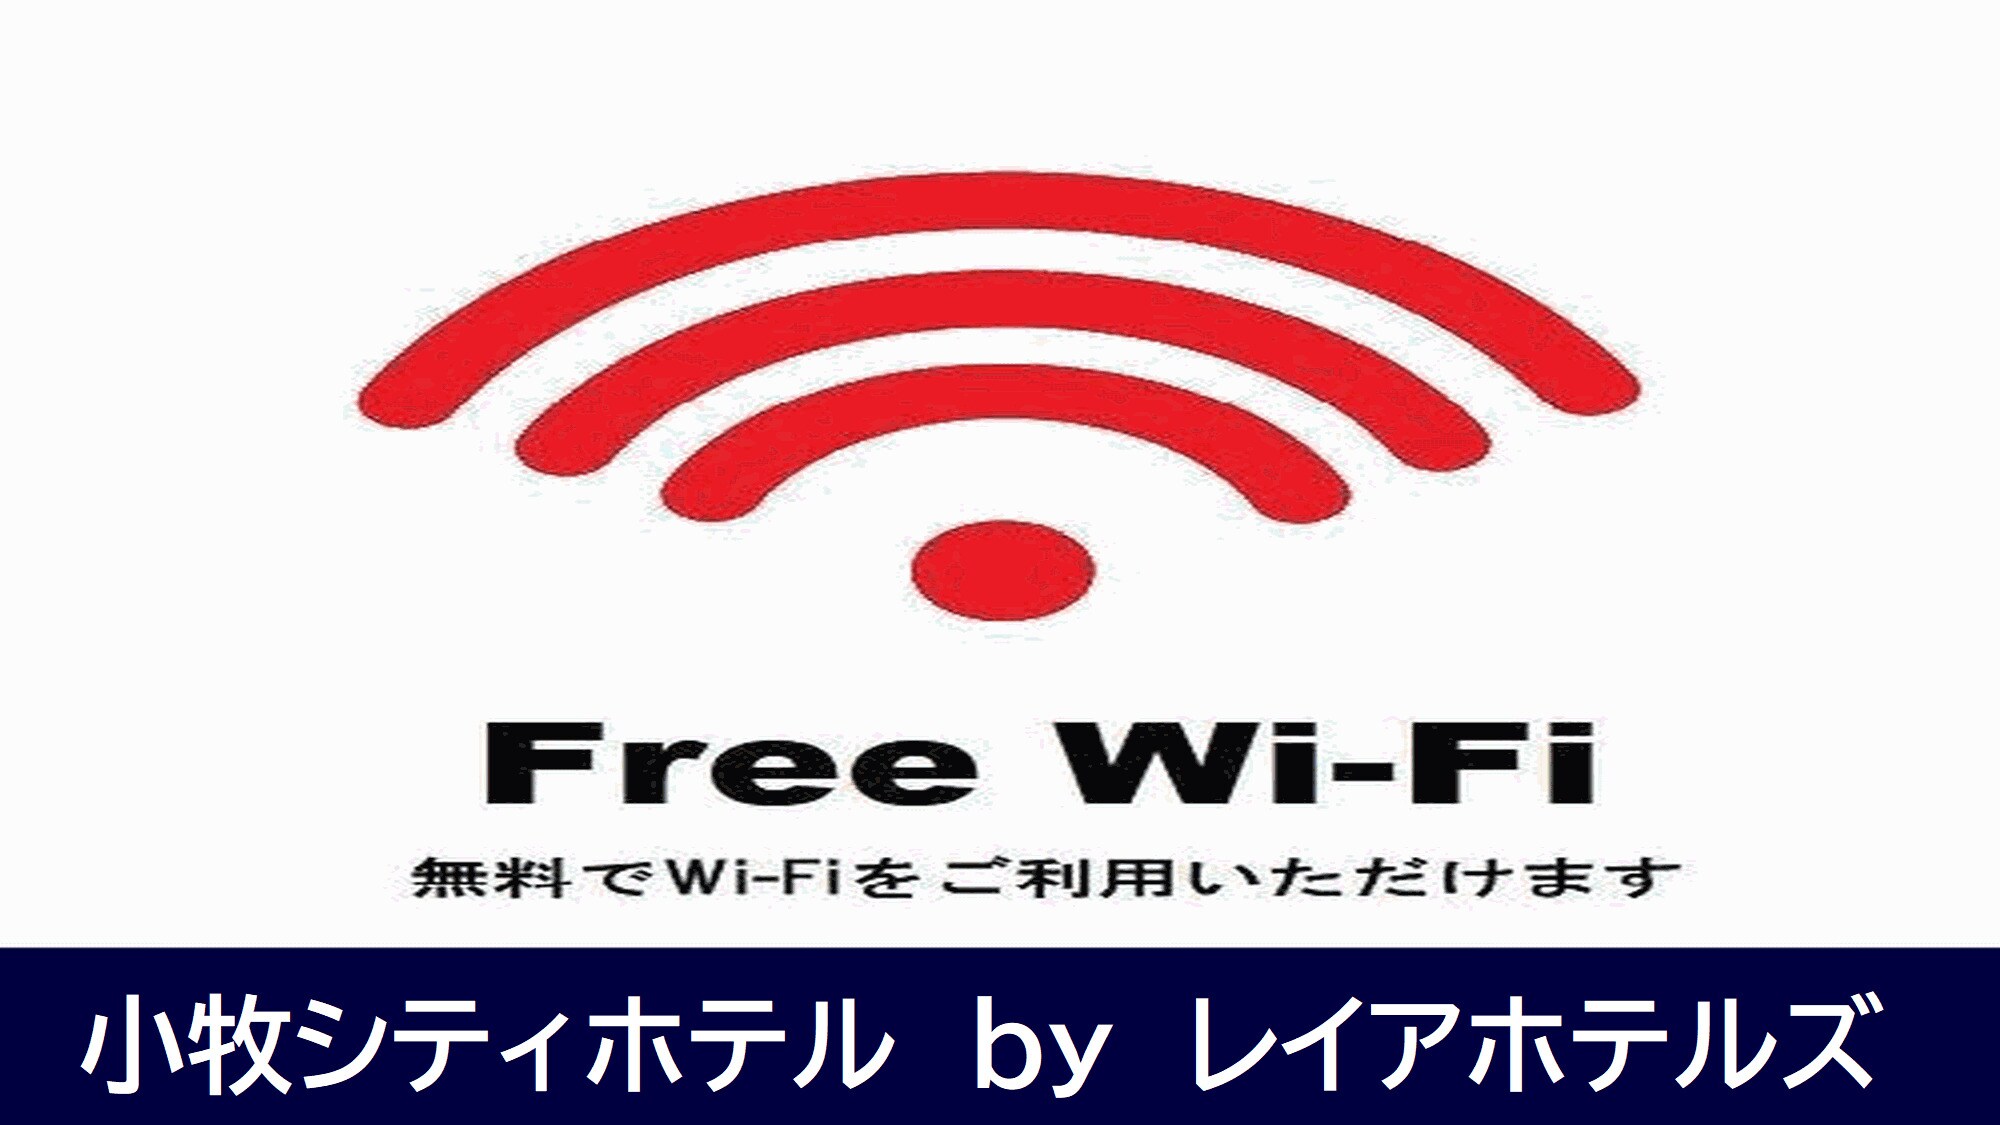 ■ Free WI-FI (5G) ■